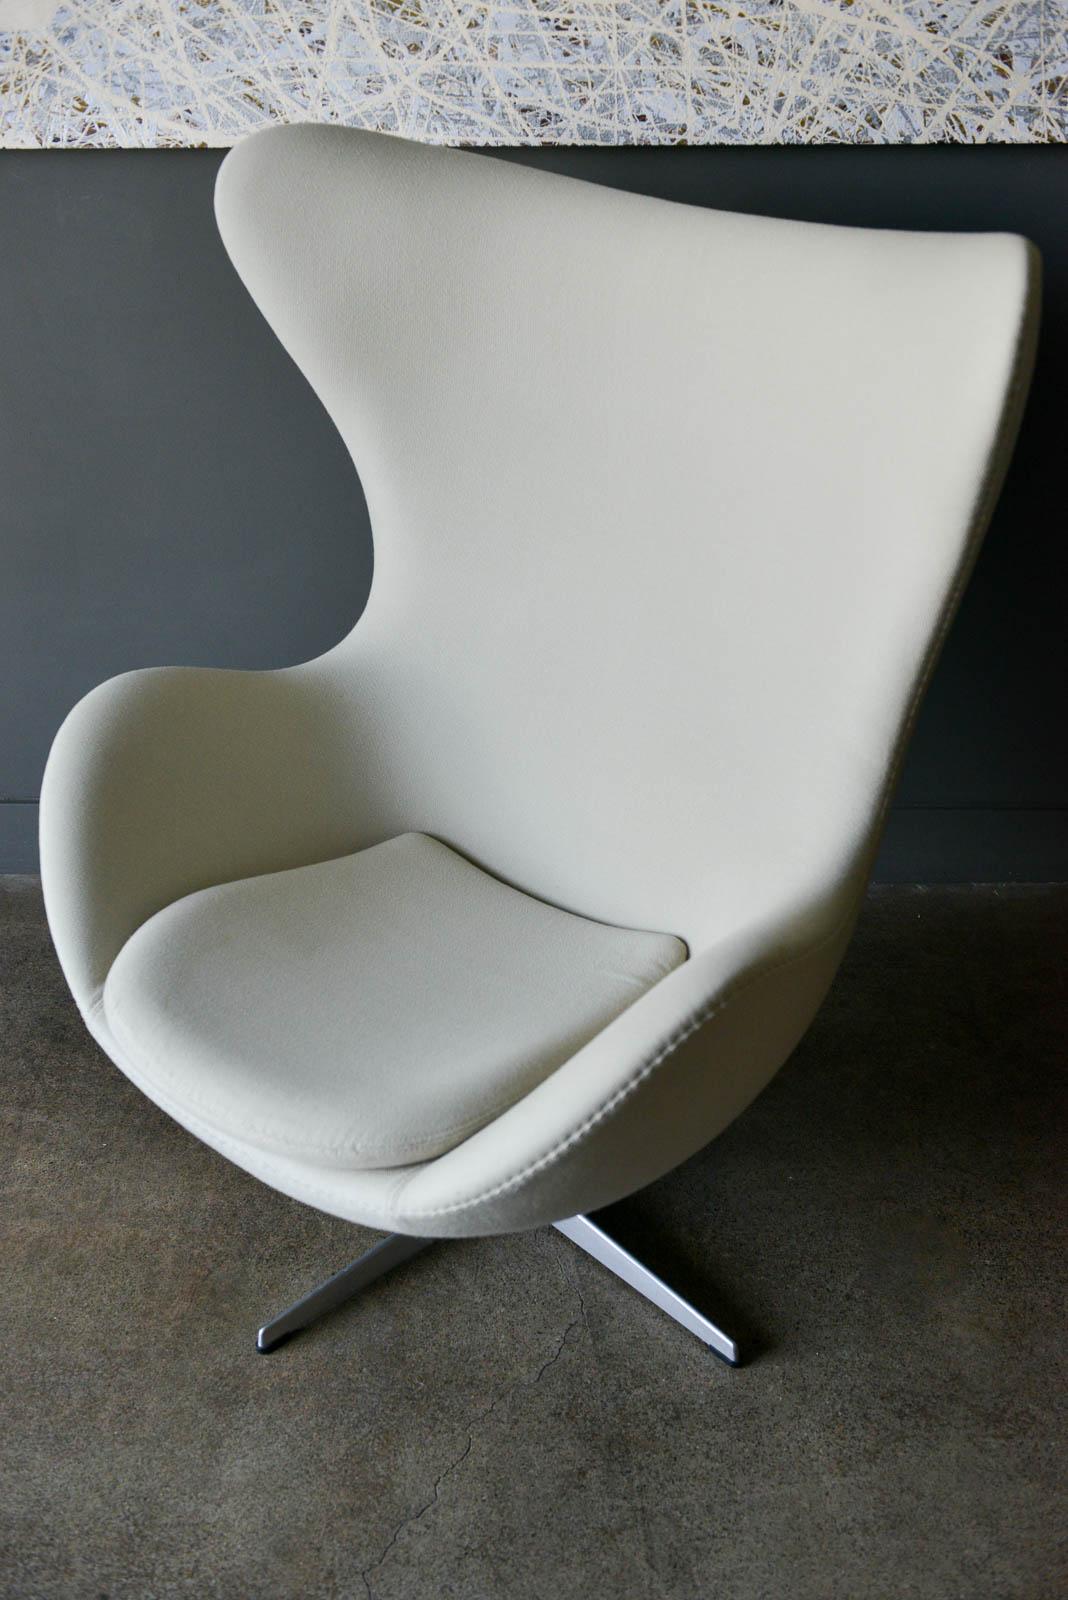 Mid-Century Modern Arne Jacobsen for Fritz Hansen Egg Chair, 1958